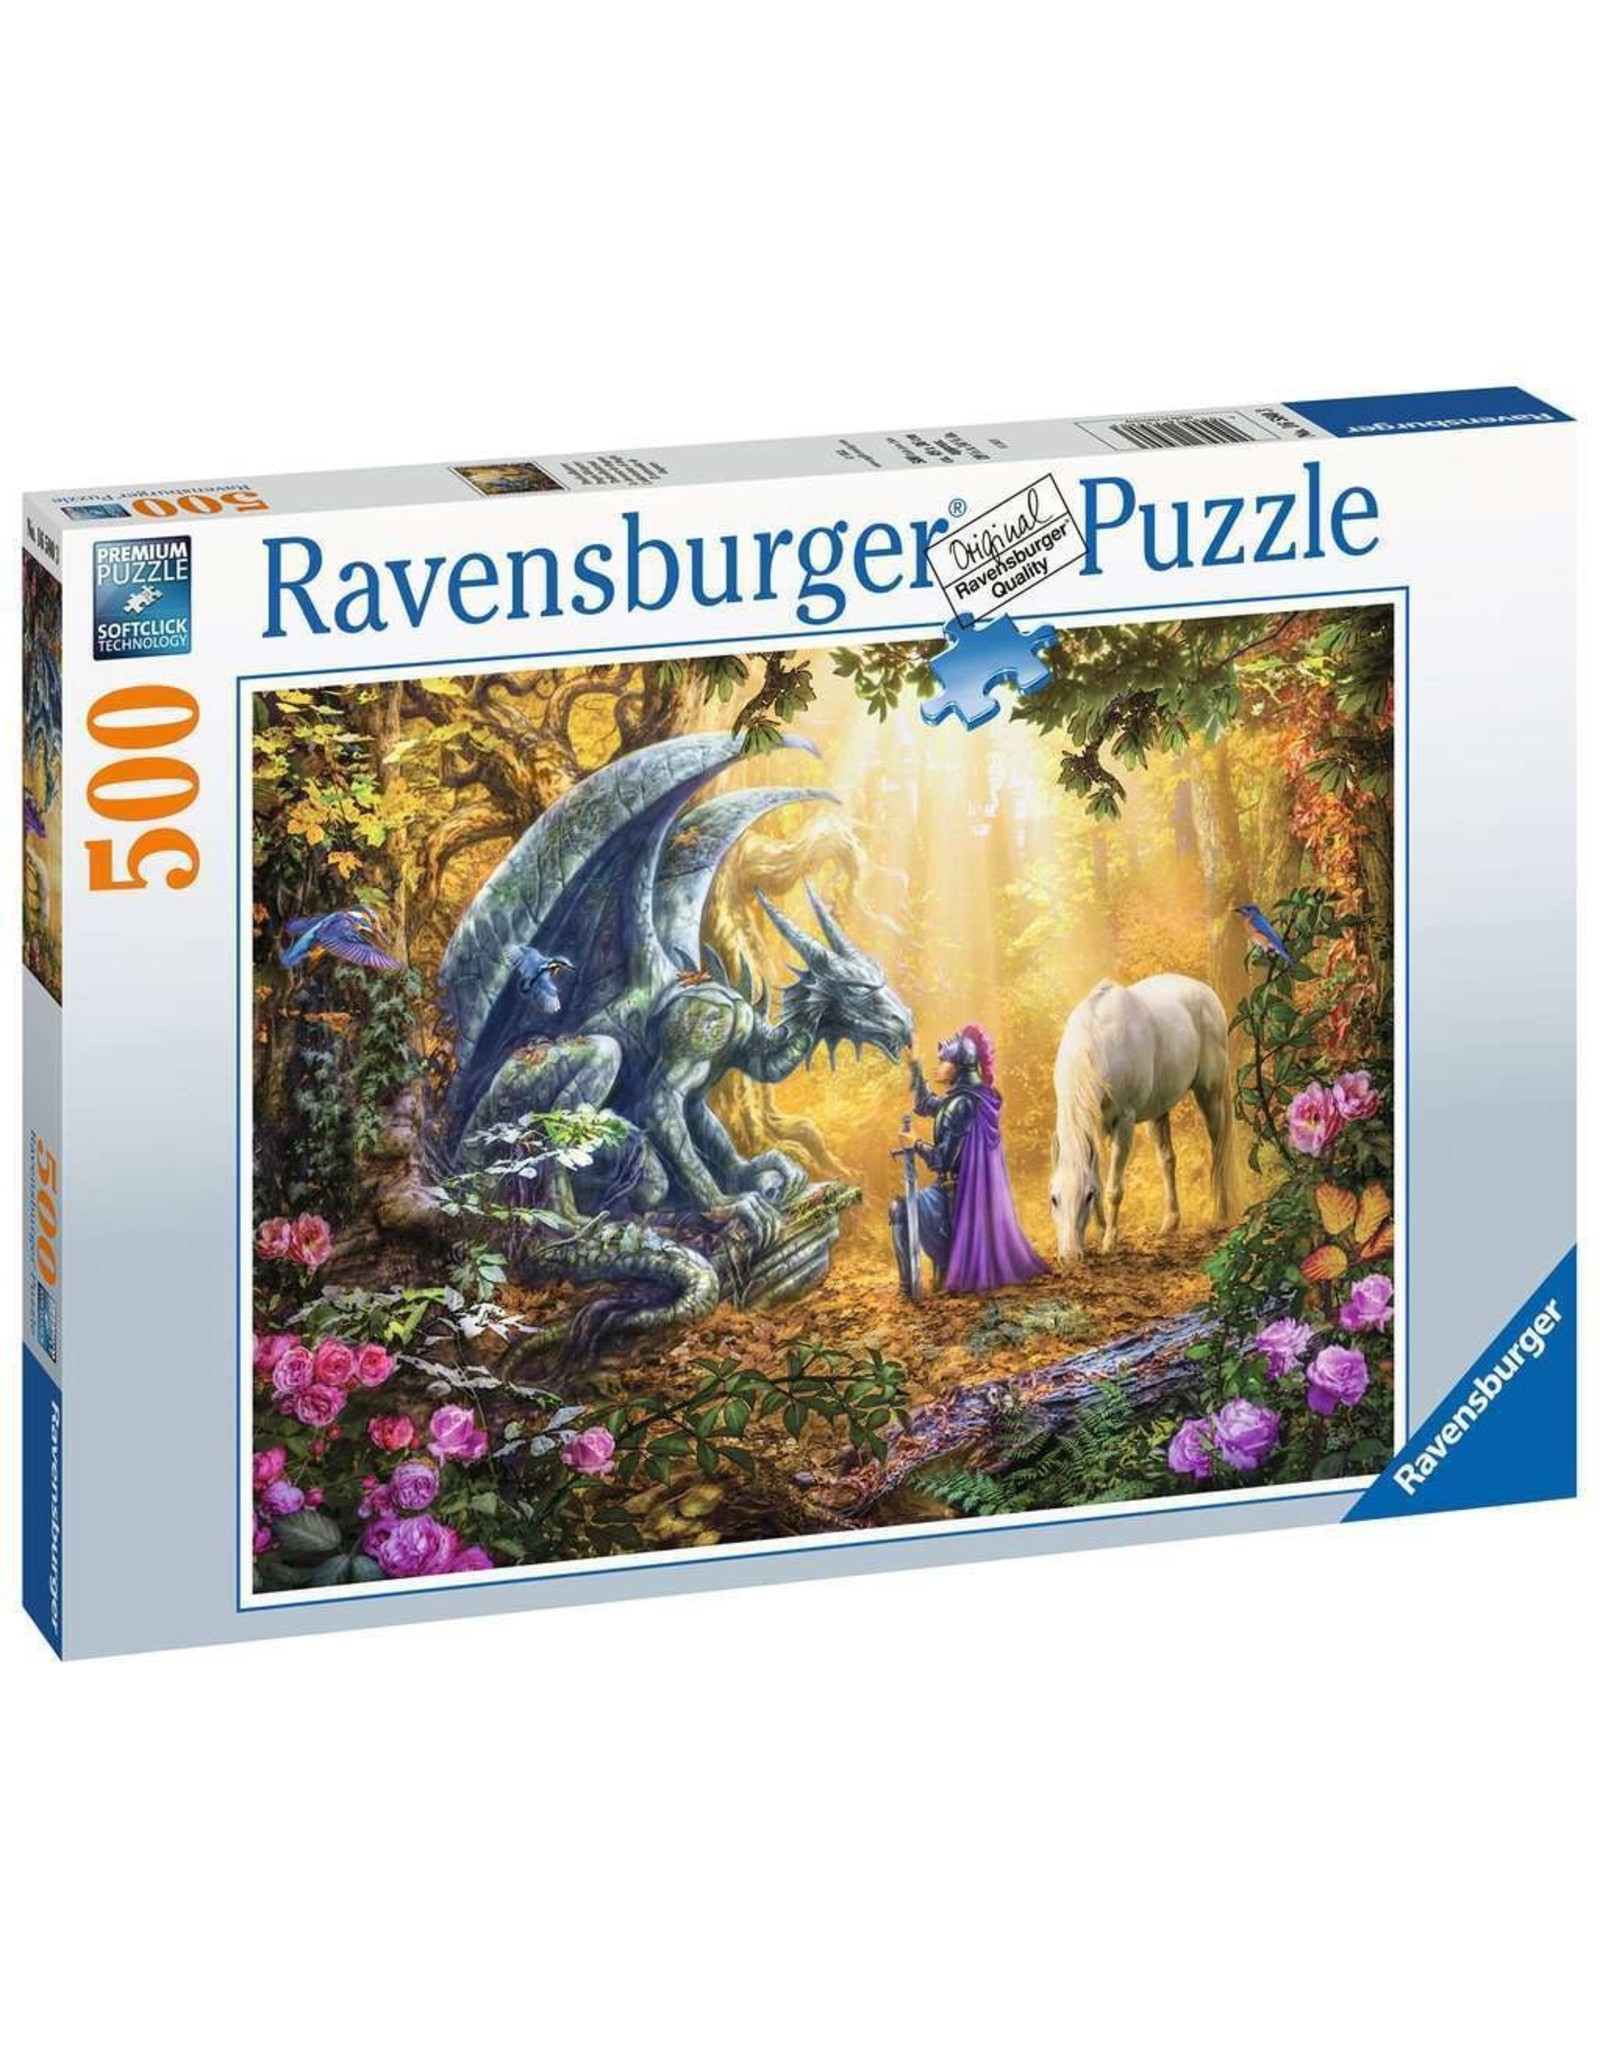 Ravensburger 500 pcs. Dragon Whisperer Puzzle